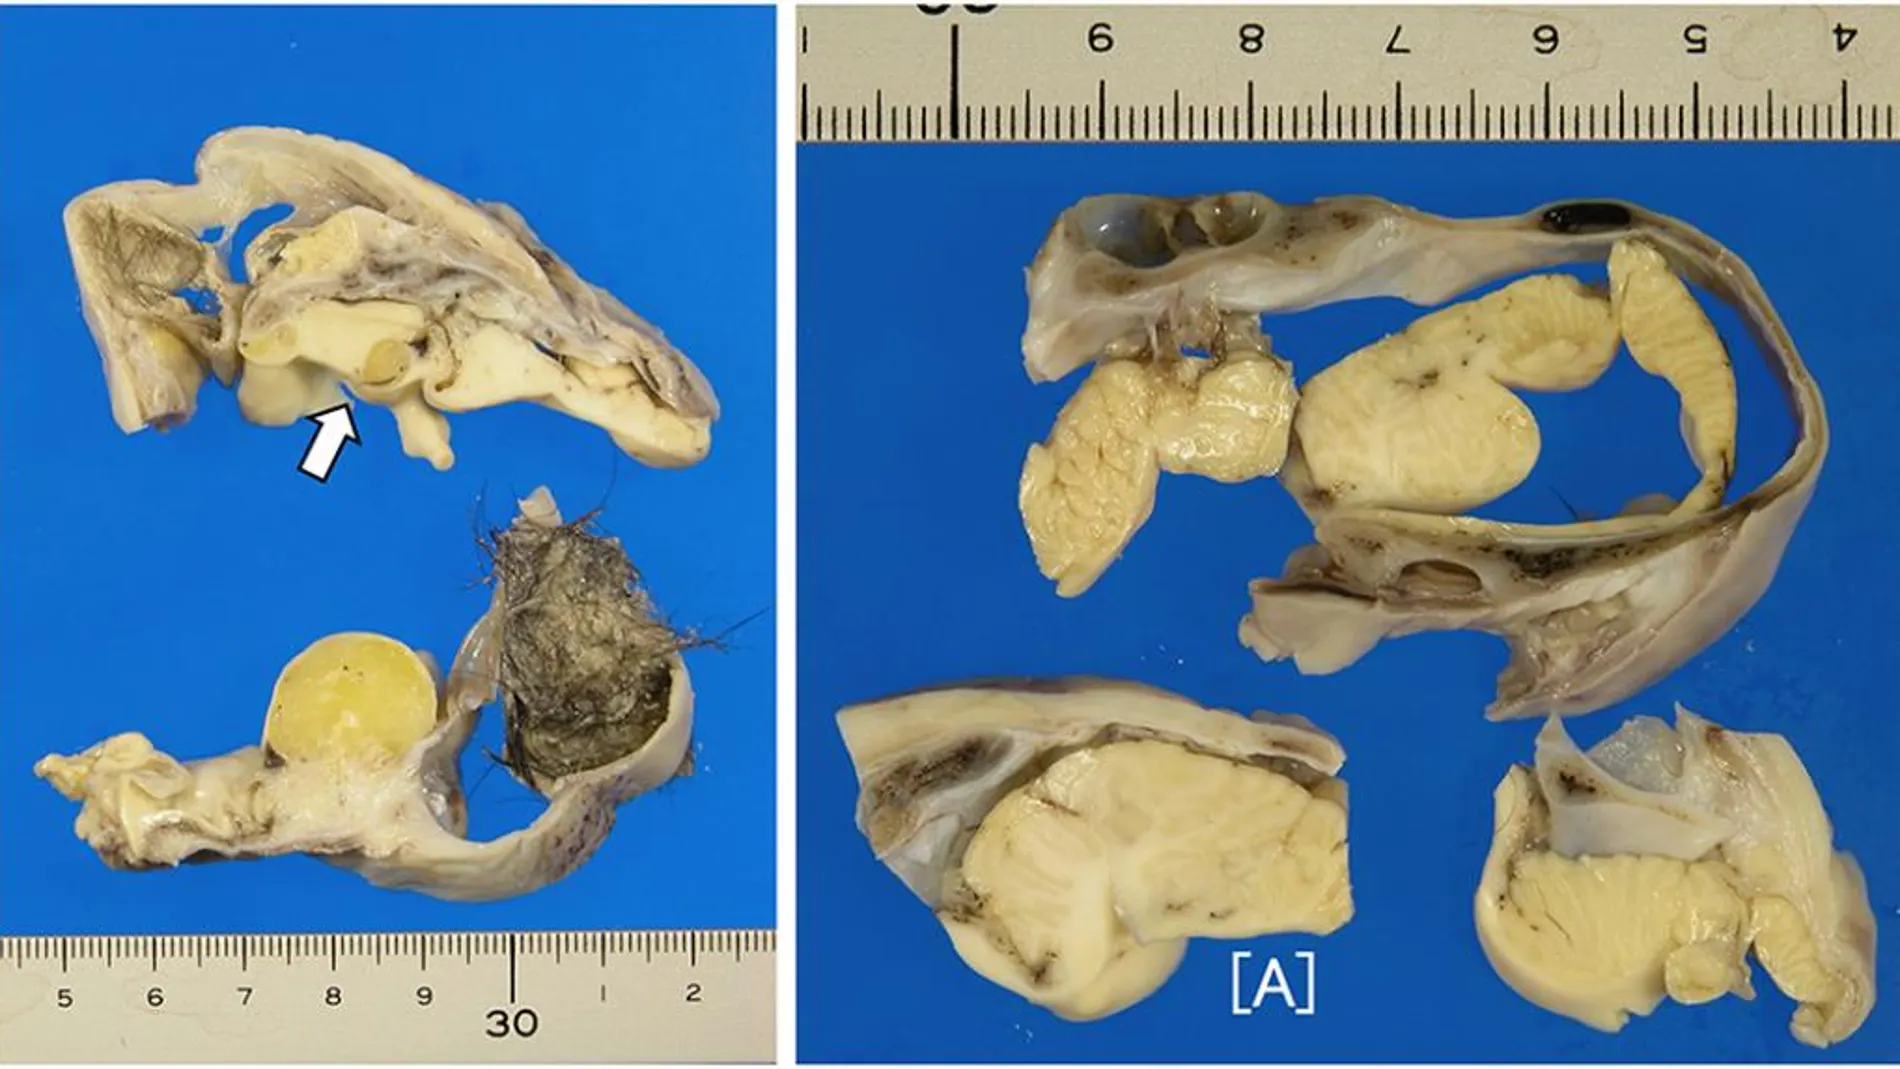 Un tumor en el ovario de una joven escondía en su interior un cerebro y hueso craneal